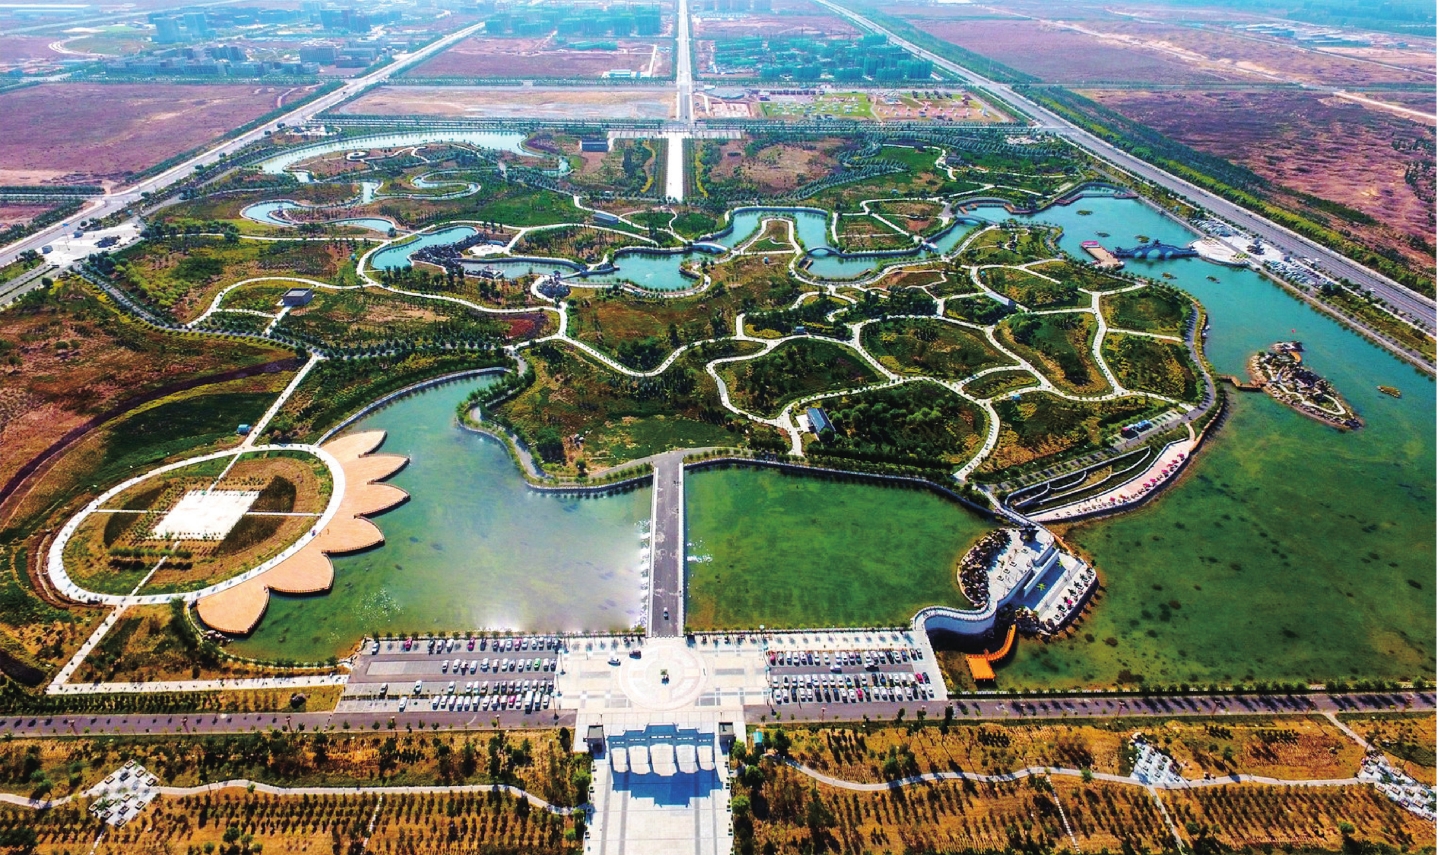 滨河新区景城公园鸟瞰图艾依河畔的花海景观回首过去,摘得中国避暑